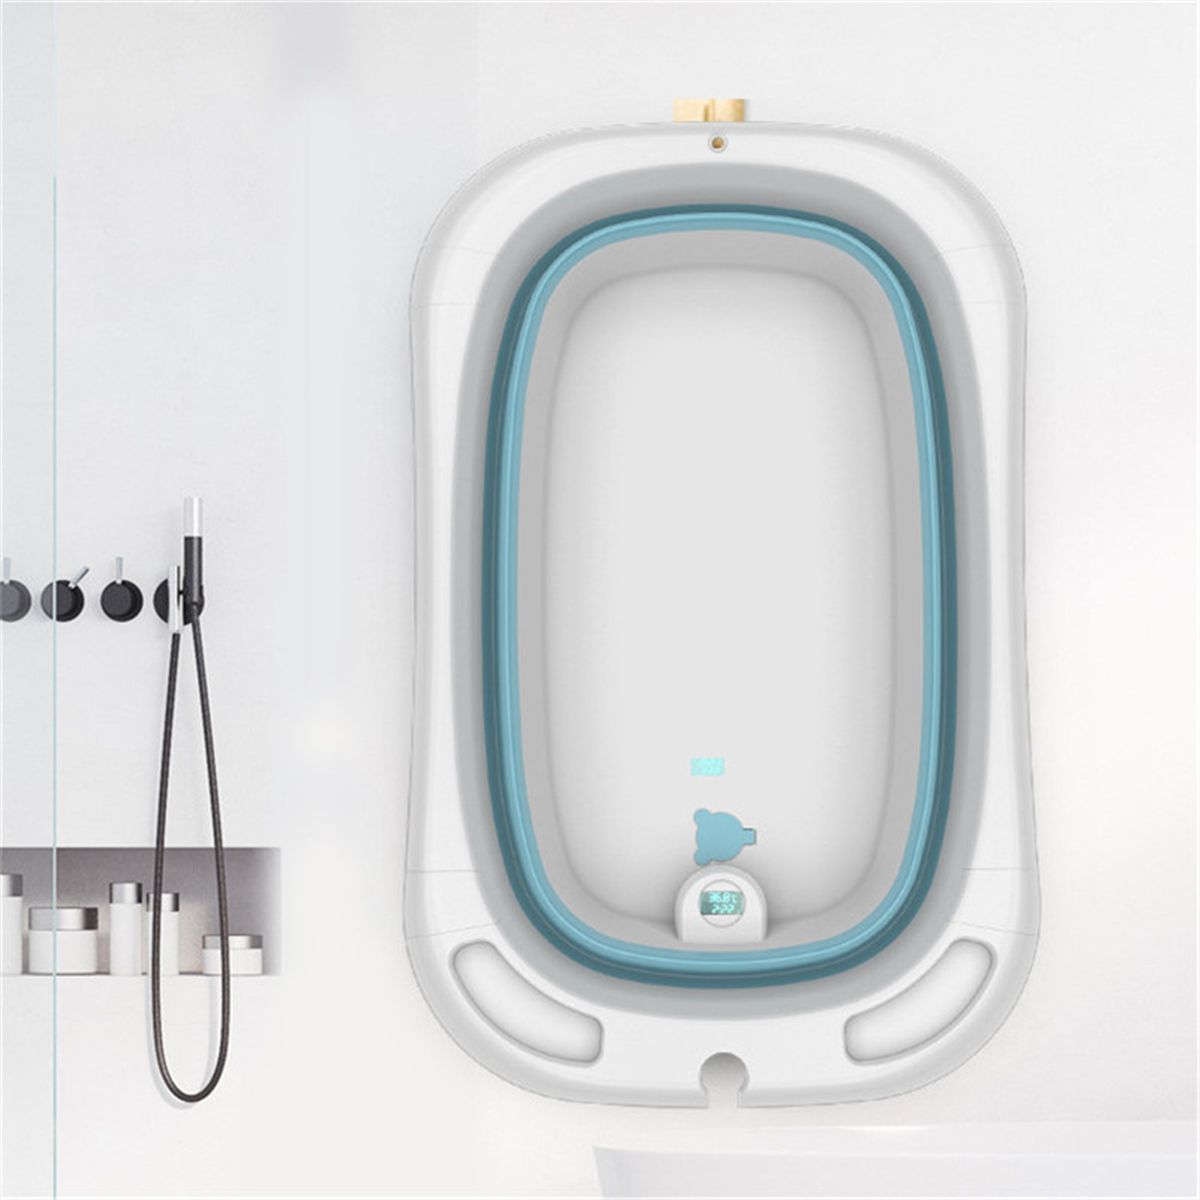 Folding-Baby-Bath-Tub-Reclining-Bath-Barrel-Newborn-Bathtub-Shower--Thermometer-1715155